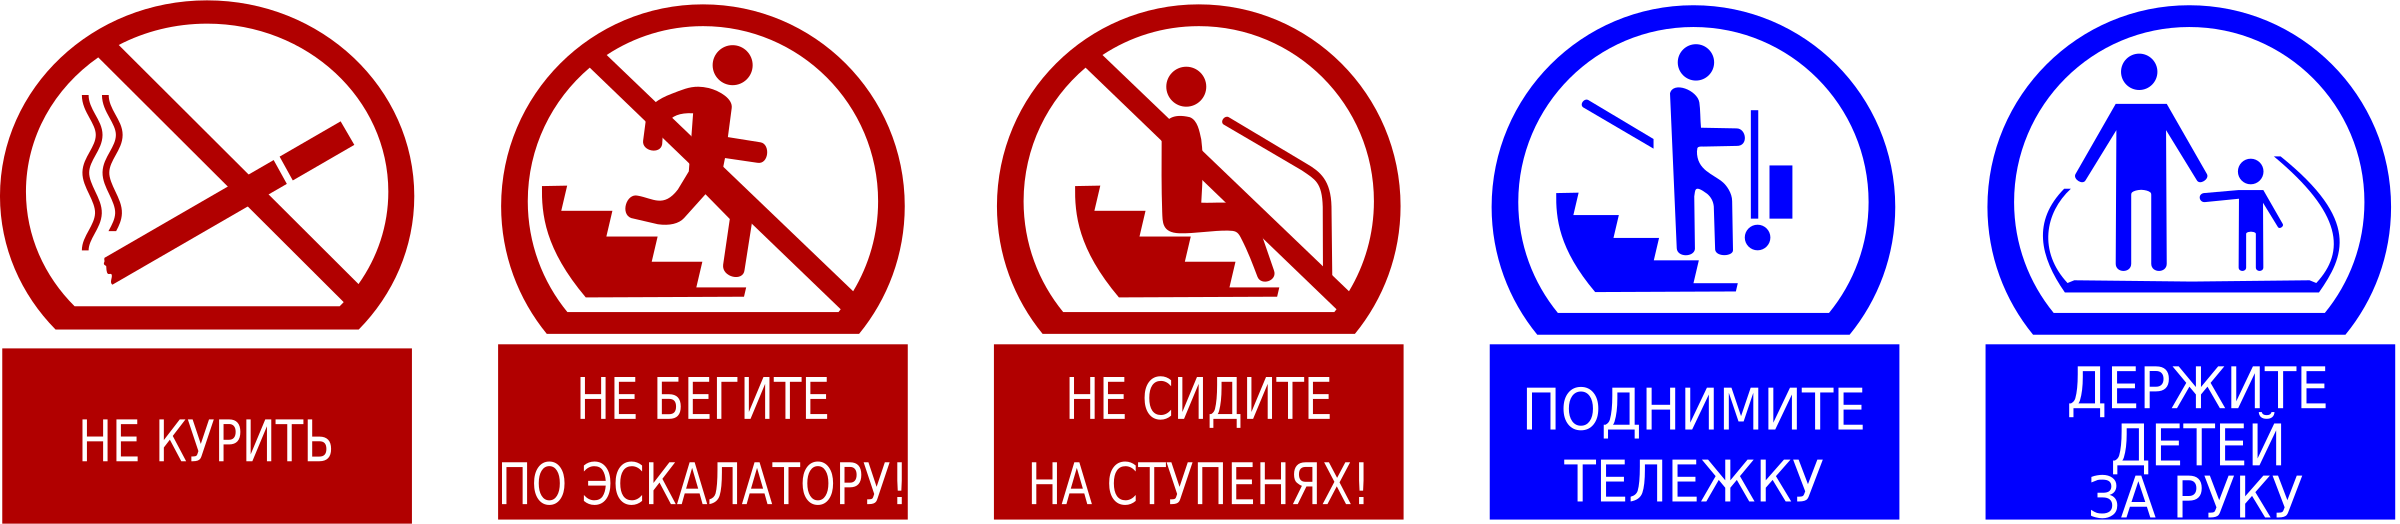 Правила безопасности на эскалаторе. Знак эскалатор. Таблички на эскалатор. Знаки безопасности в метрополитене. Знаки безопасности на эскалаторе.